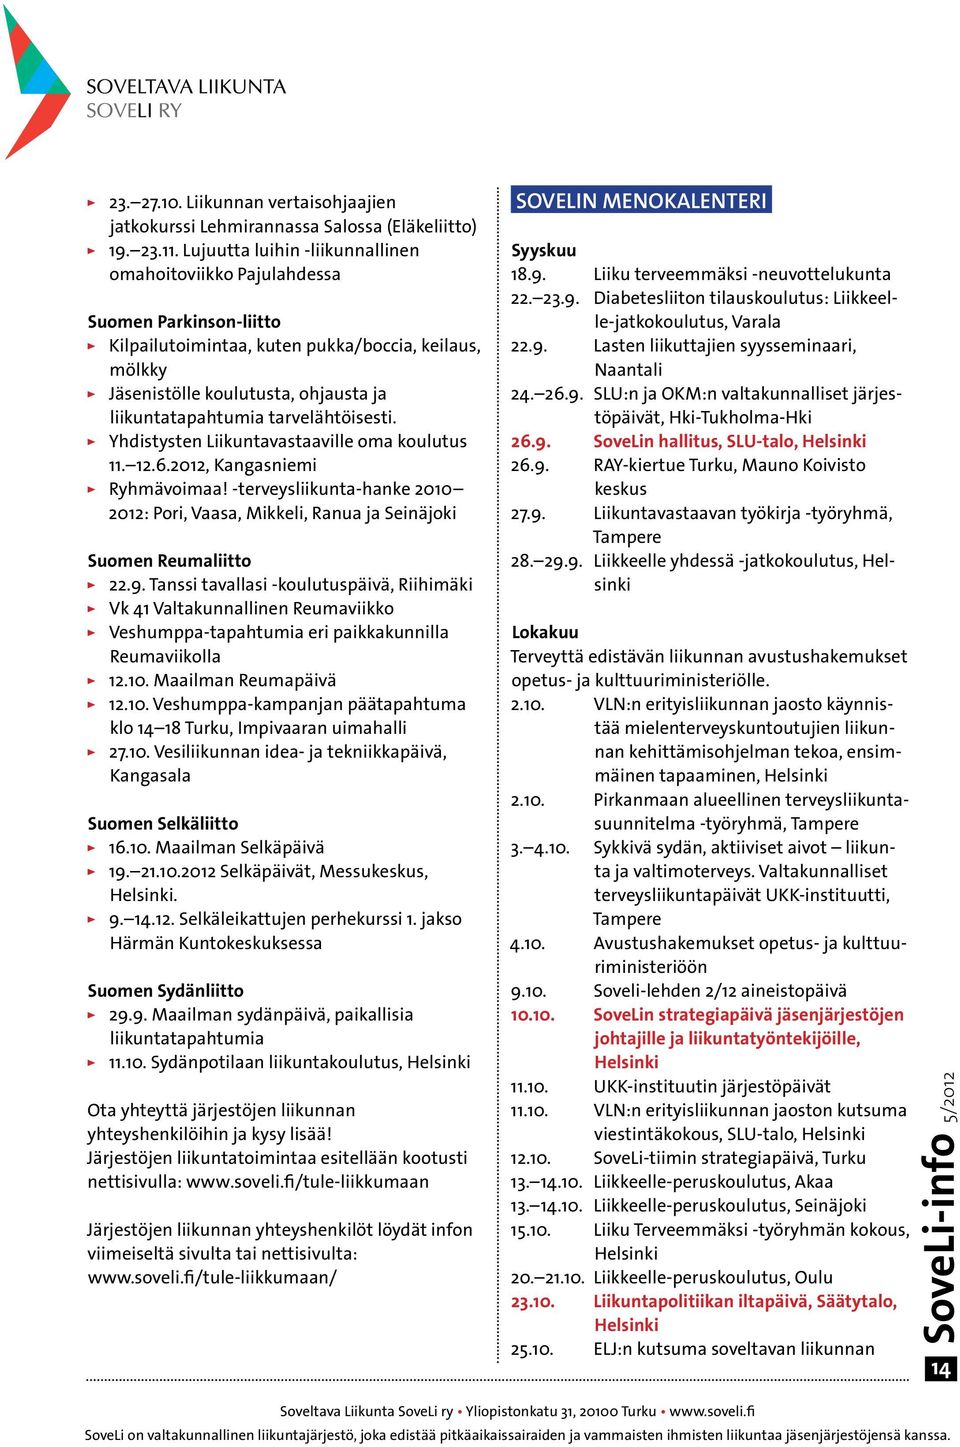 tarvelähtöisesti. Yhdistysten Liikuntavastaaville oma koulutus 11. 12.6.2012, Kangasniemi Ryhmävoimaa! -terveysliikunta-hanke 2010 2012: Pori, Vaasa, Mikkeli, Ranua ja Seinäjoki Suomen Reumaliitto 22.